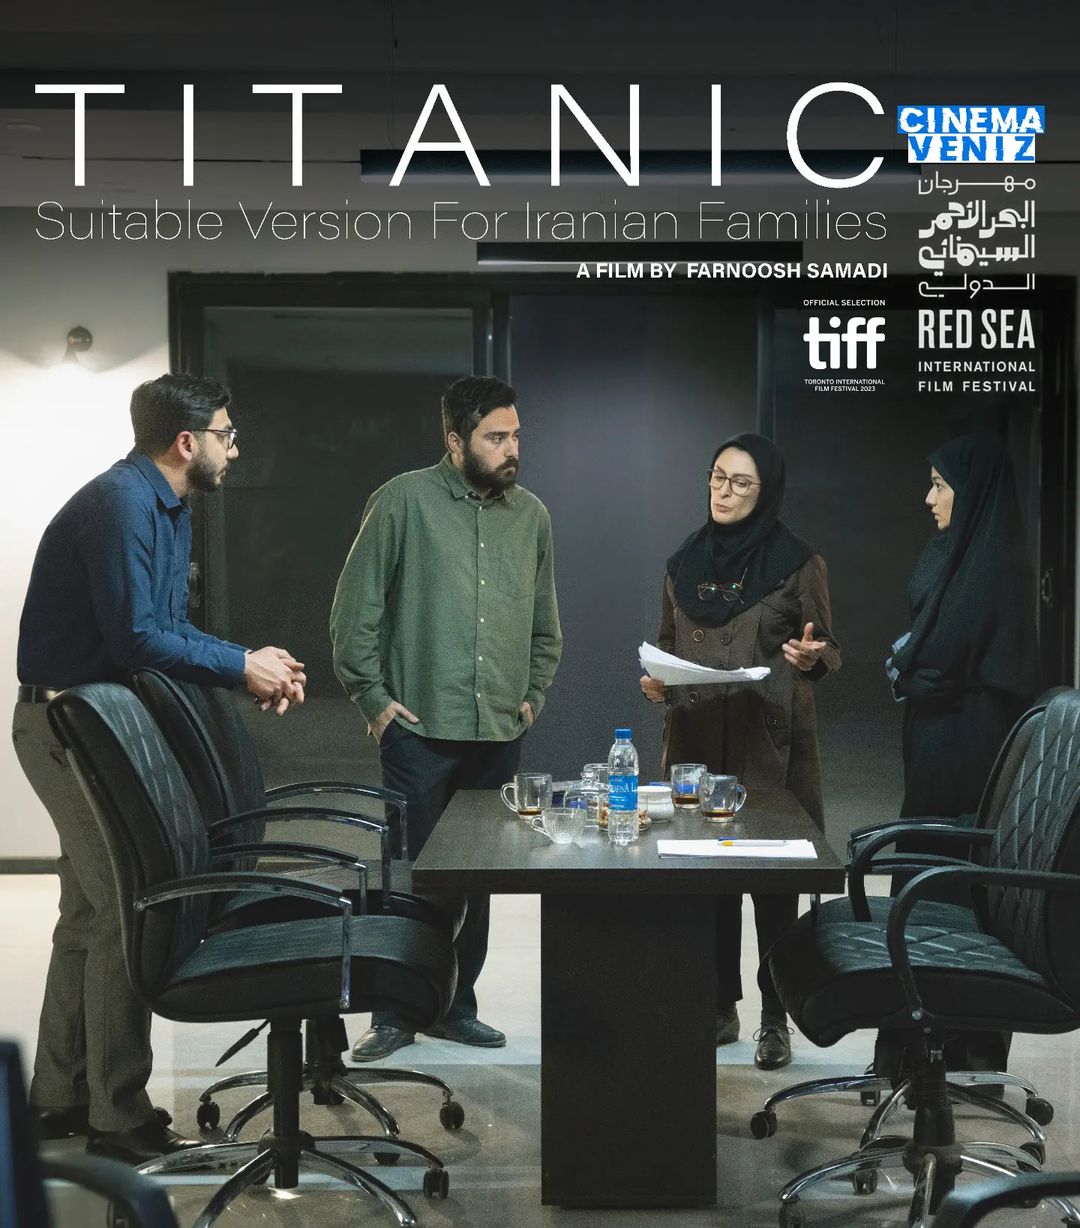 دانلود فیلم تایتانیک: نسخه مناسب برای خانواده های ایرانی